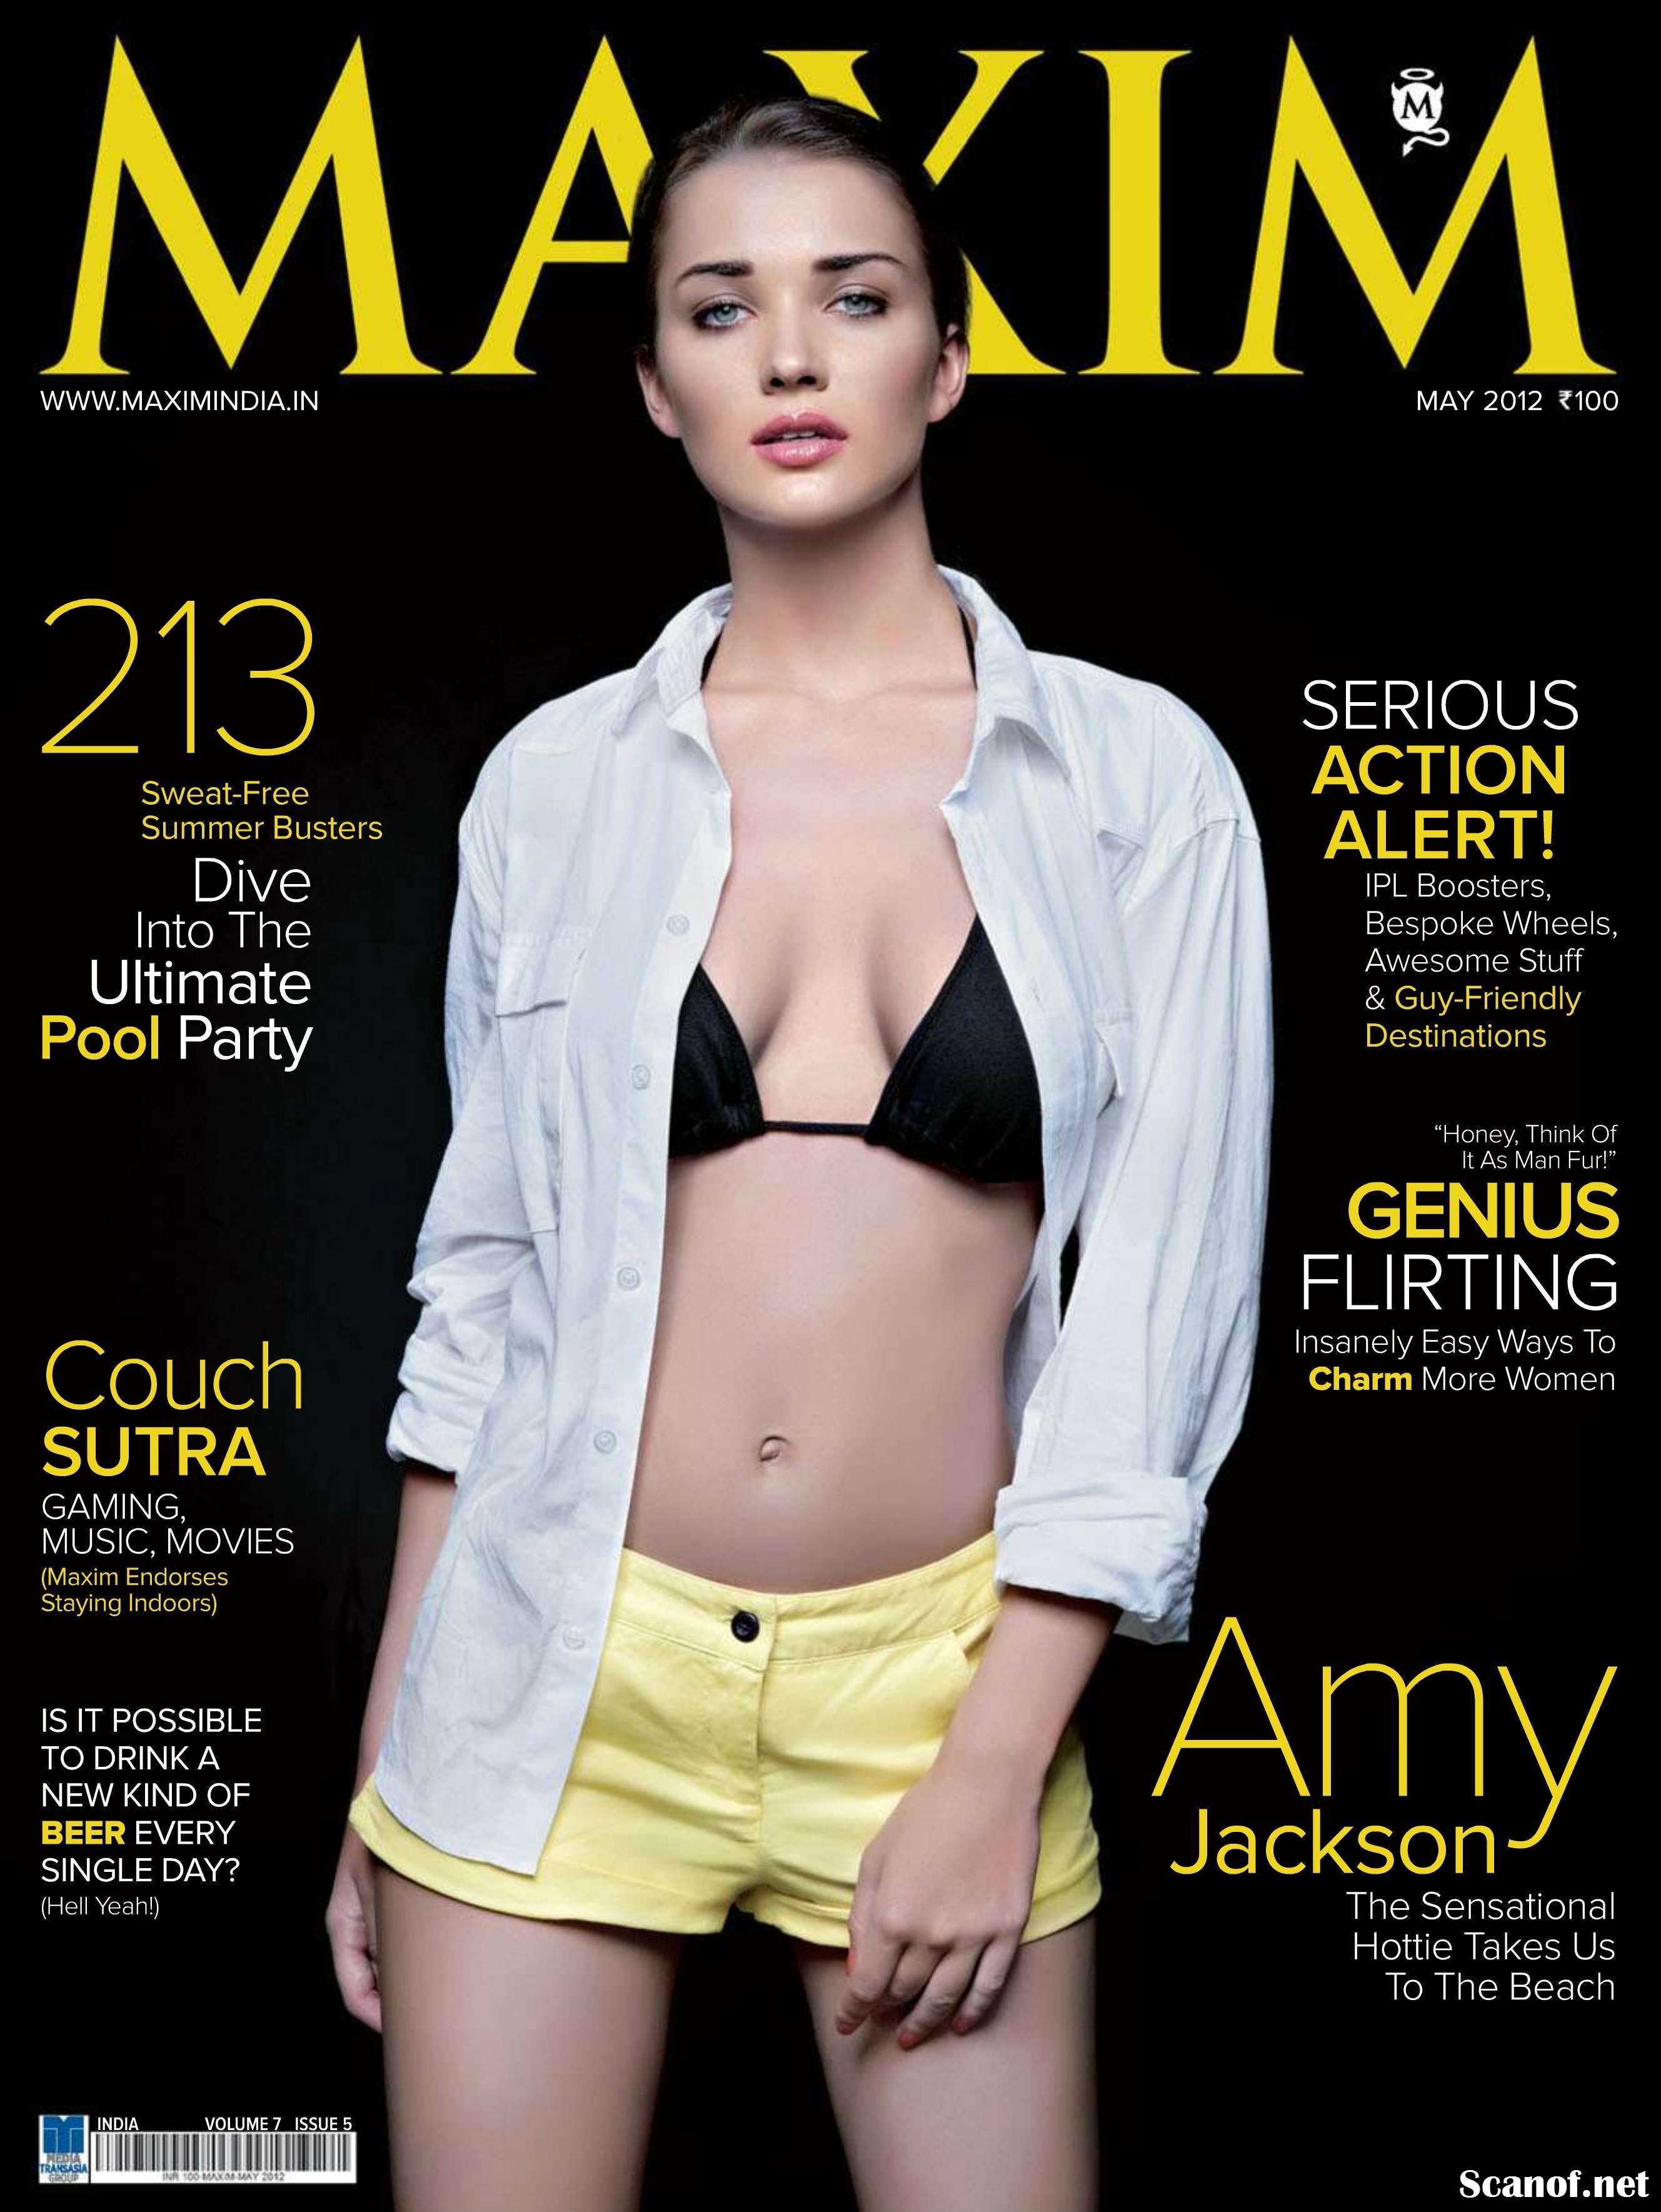 Amy Jackson for Maxim Magazine India.